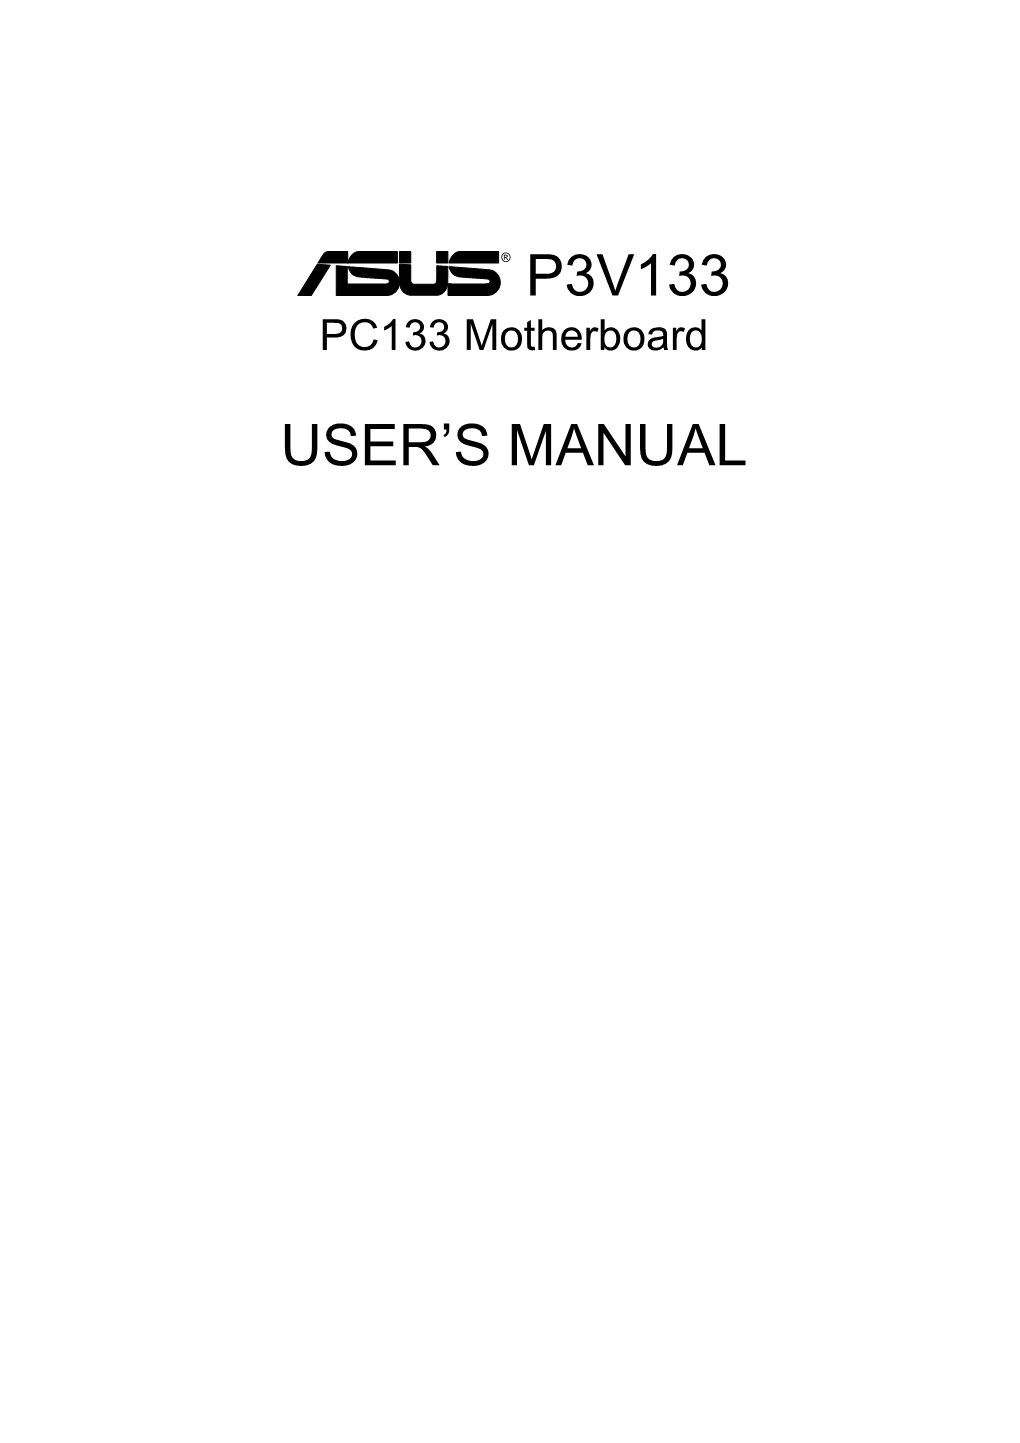 ® P3v133 User's Manual